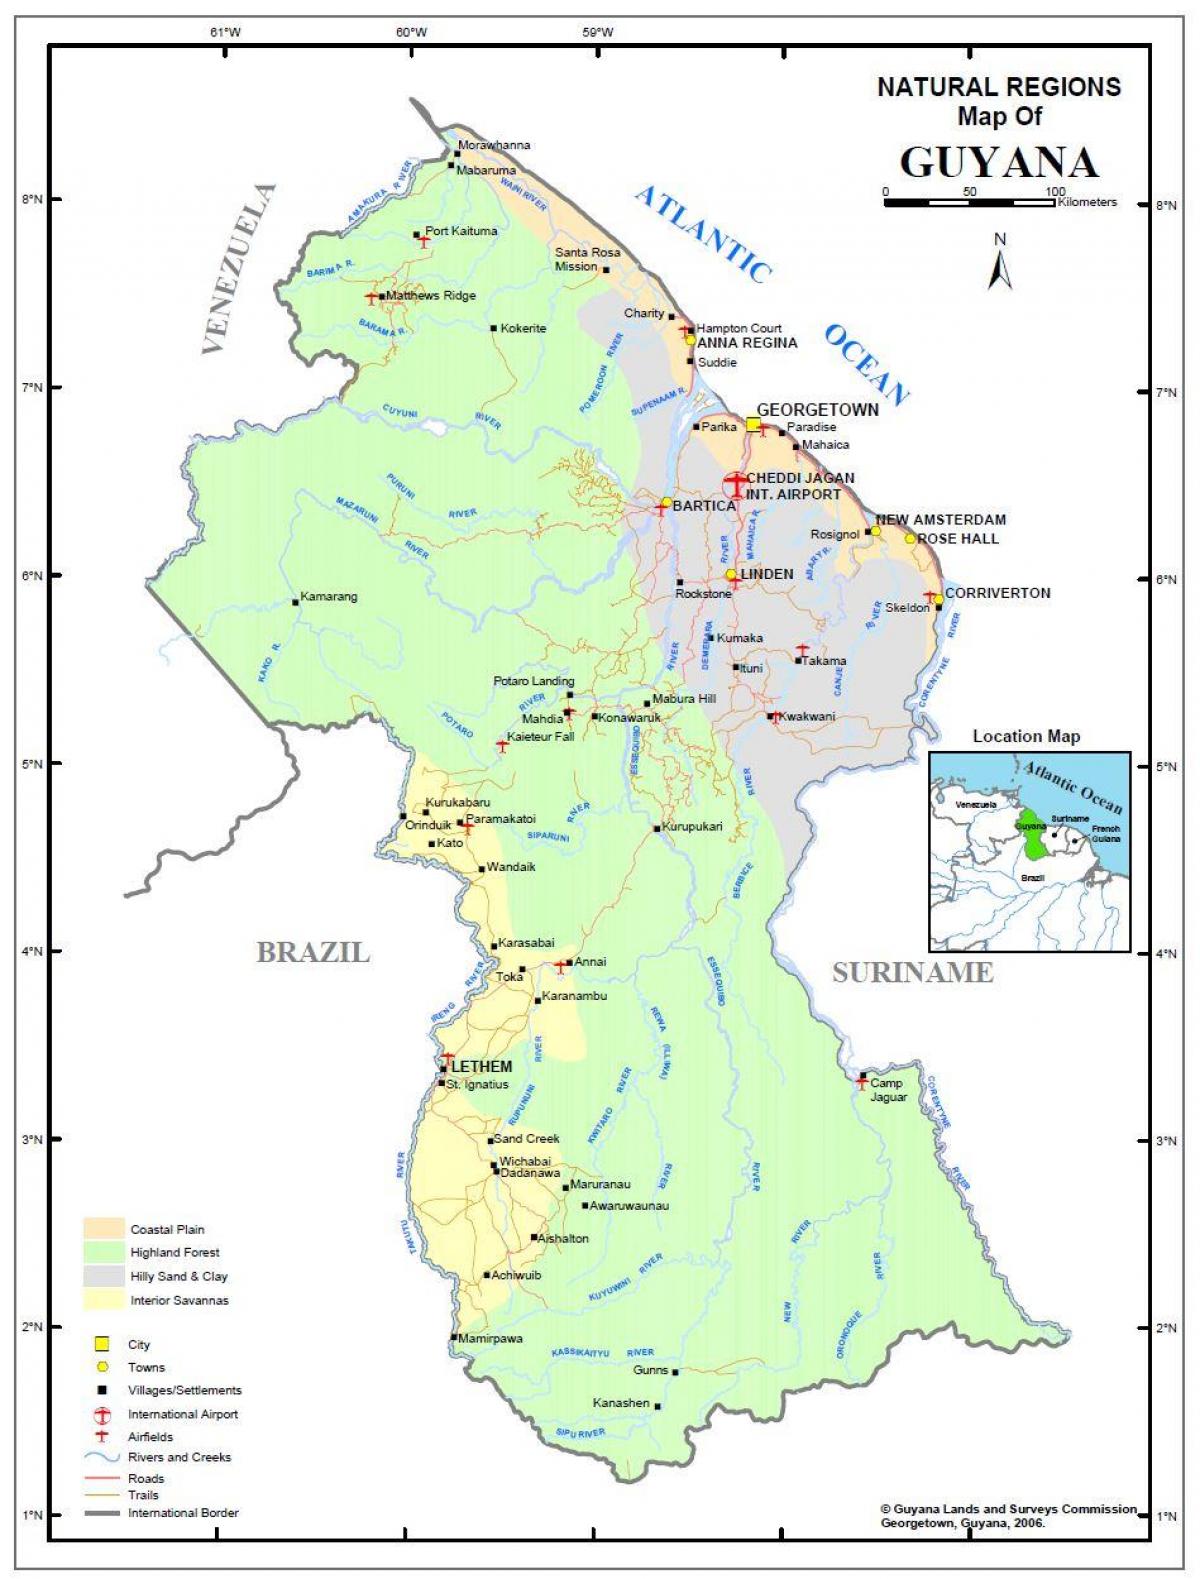 térkép Guyana mutatja, hogy a 4 természetes régiók